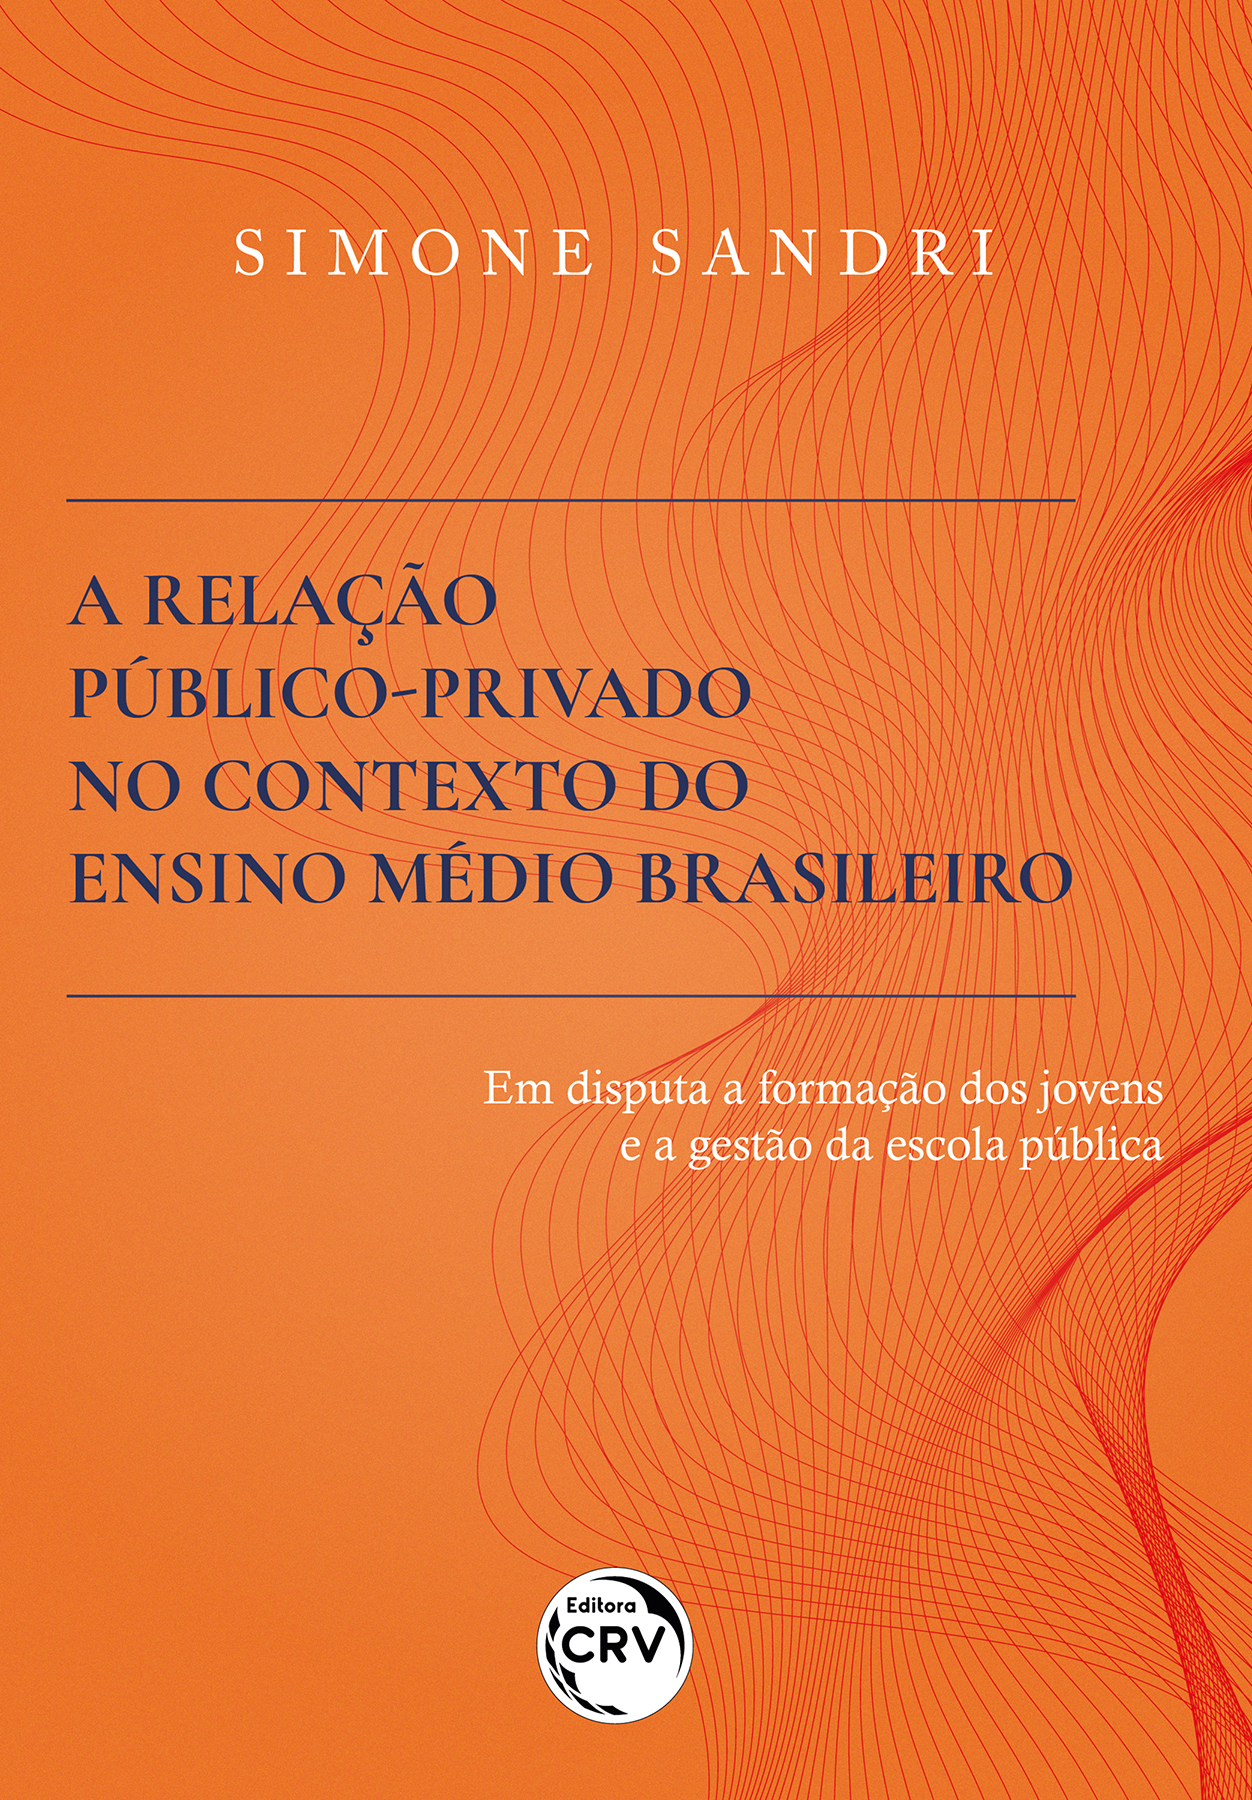 Capa do livro: A RELAÇÃO PÚBLICO-PRIVADO NO CONTEXTO DO ENSINO MÉDIO BRASILEIRO <br> EM DISPUTA A FORMAÇÃO DOS JOVENS E A GESTÃO DA ESCOLA PÚBLICA